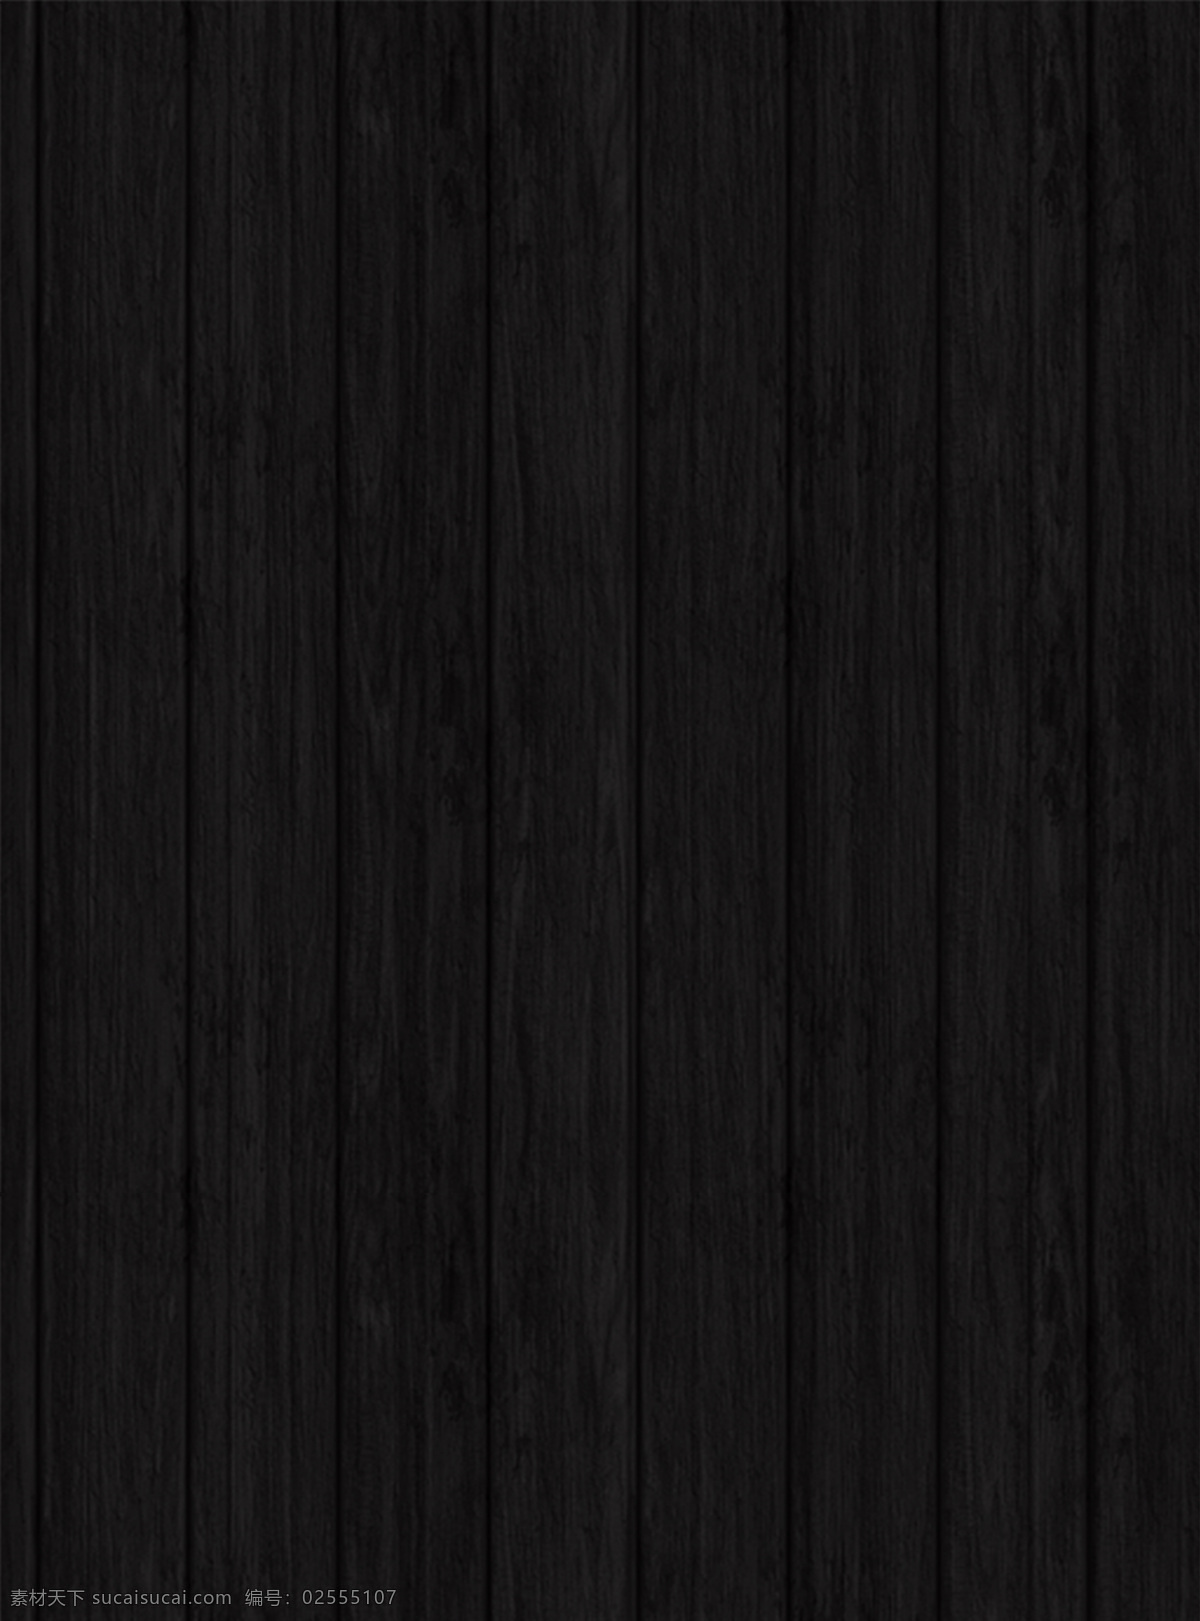 黑 灰色 木板 纹理 背景 深色 黑色 黑灰色 暗色 暗木 木质 木头 木纹 肌理 底纹 插图 简约 朴素 质朴 黄色 高清 木 木地板 设计元素素材 设计背景素材 底纹边框 背景底纹